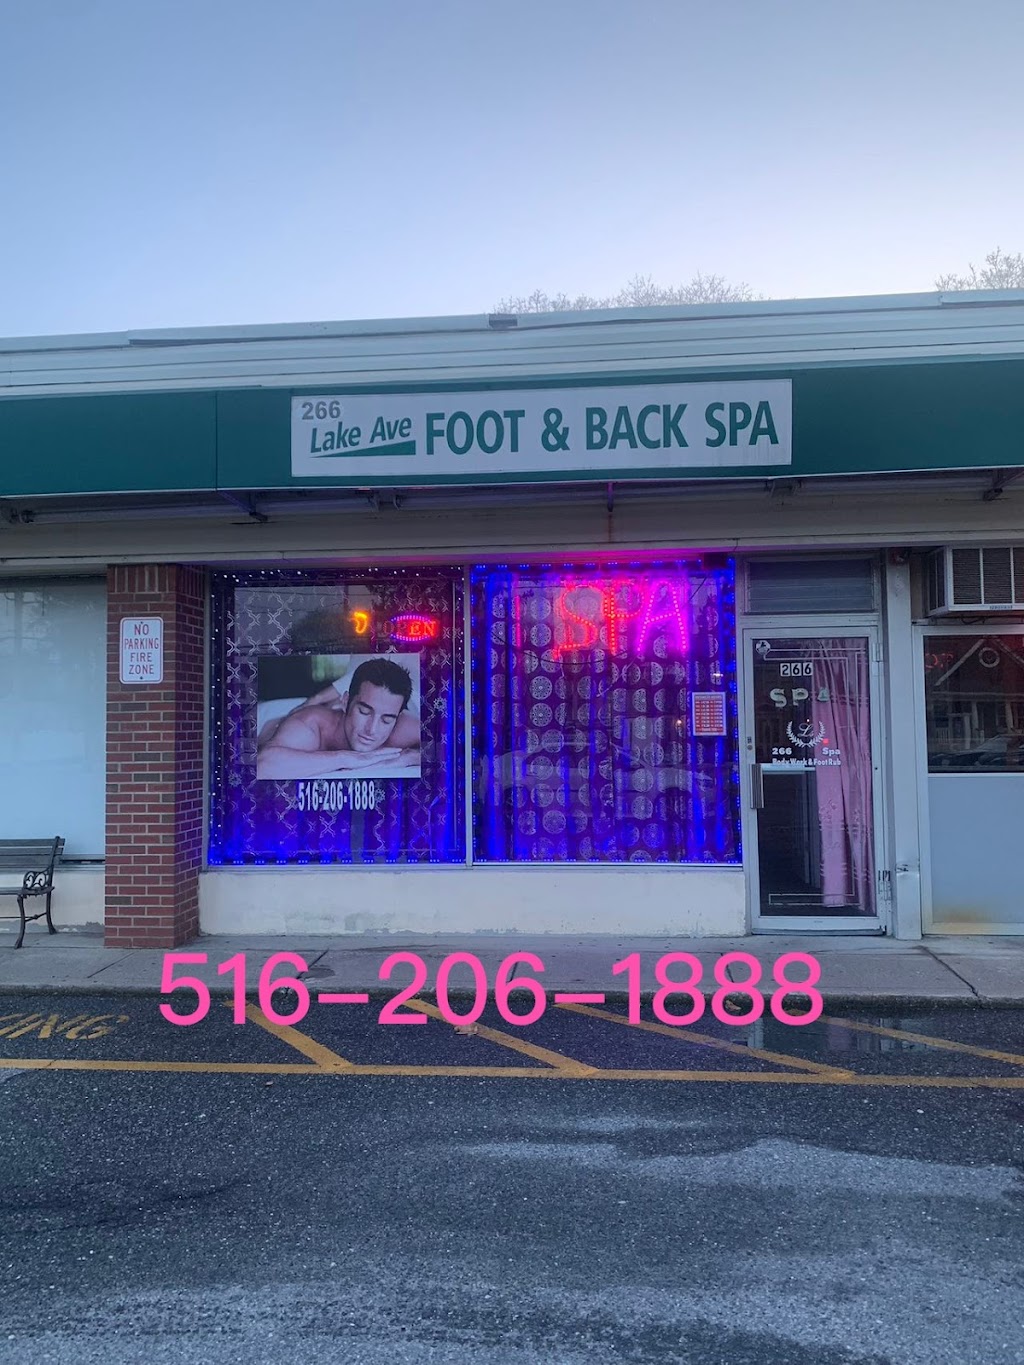 266 Lake Ave Foot & Back Spa | 266 Lake Ave, St James, NY 11780 | Phone: (516) 206-1888